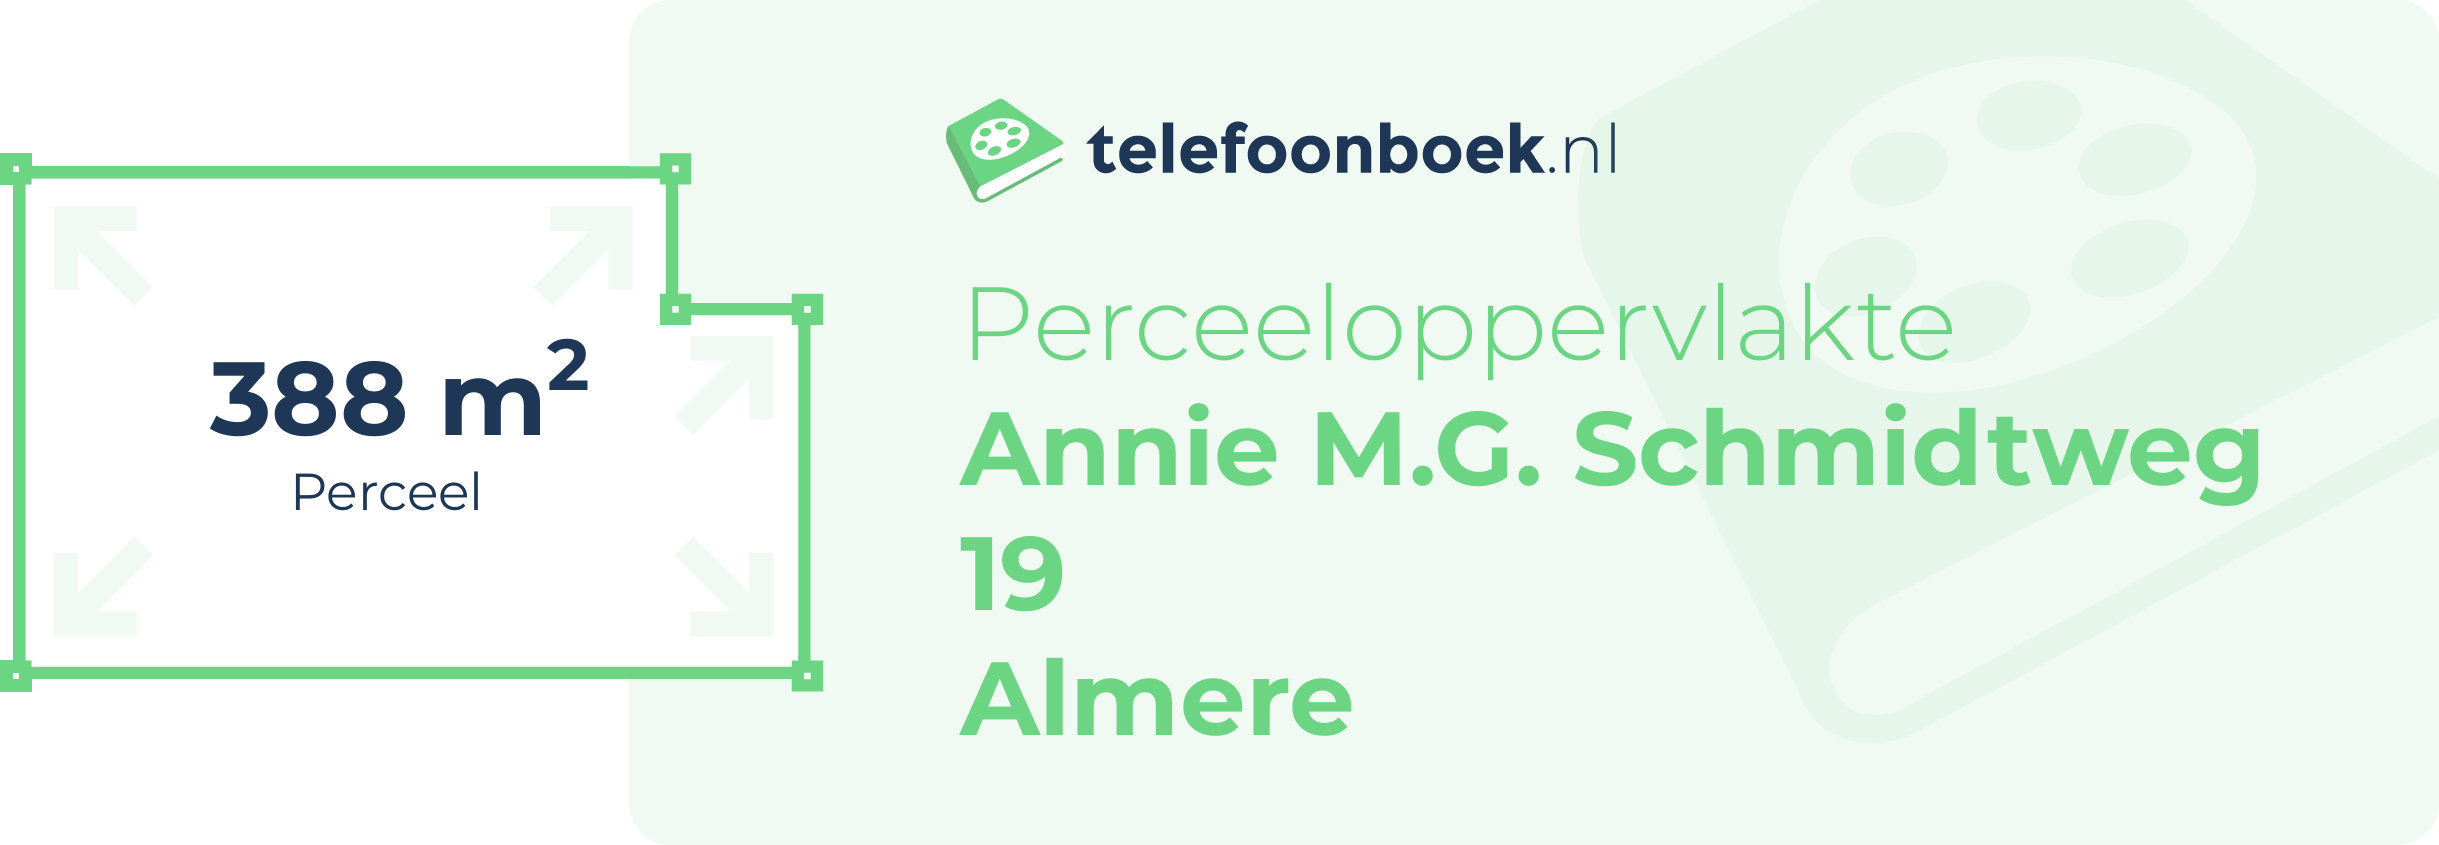 Perceeloppervlakte Annie M.G. Schmidtweg 19 Almere